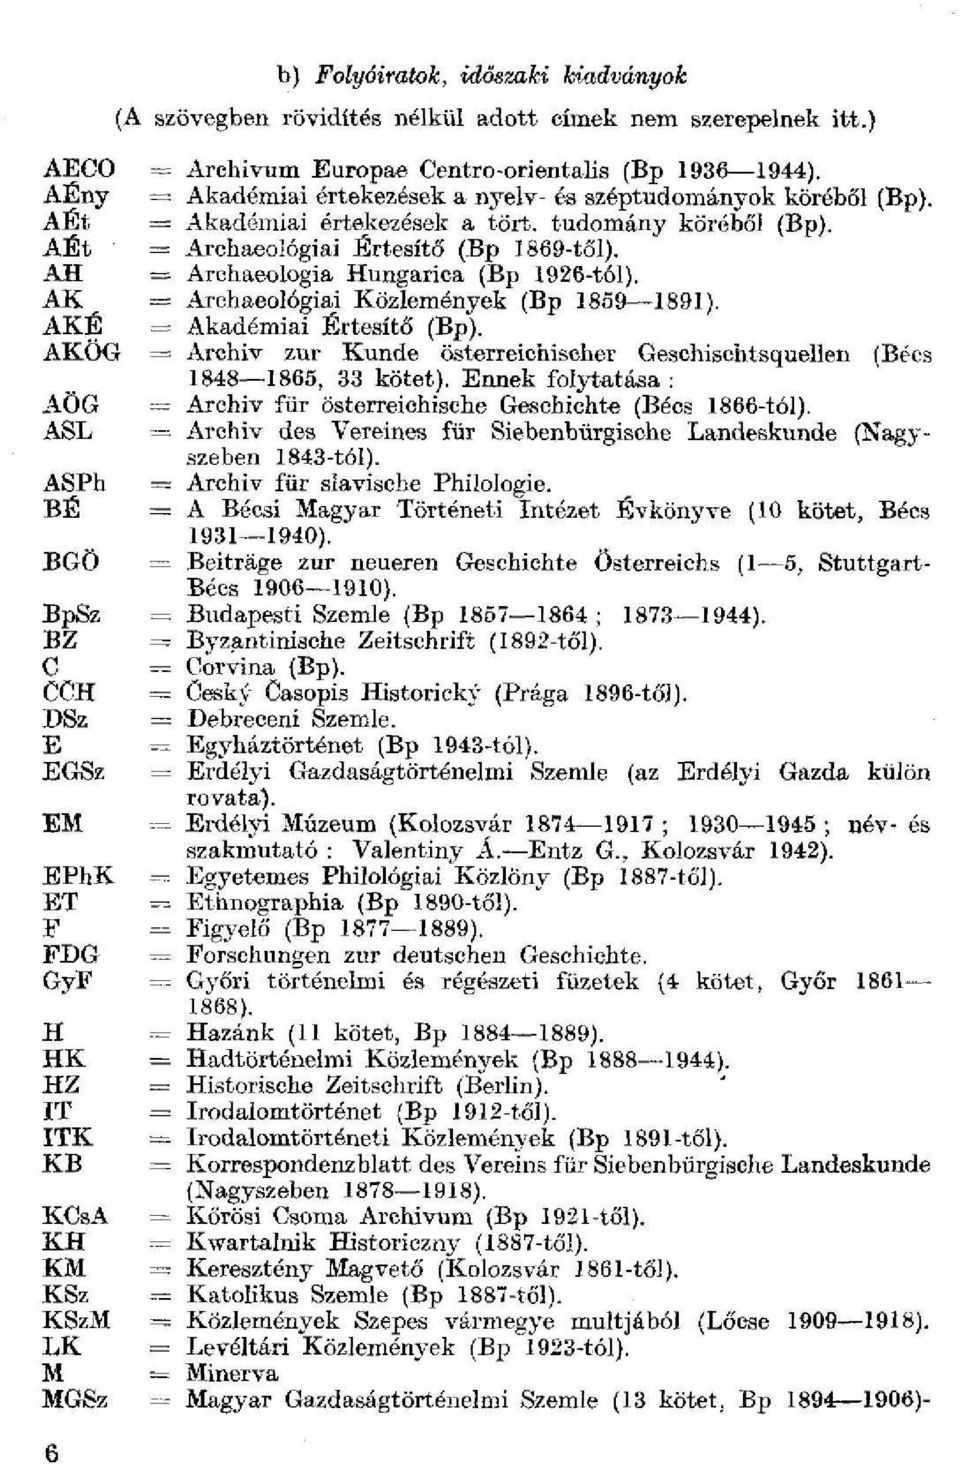 AH = Arohaeologia Hungarica (Bp 1926-tól). AK = Arehaeológiai Közlemények (Bp 1859 1891). AKÉ = Akadémiai Értesítő (Bp).